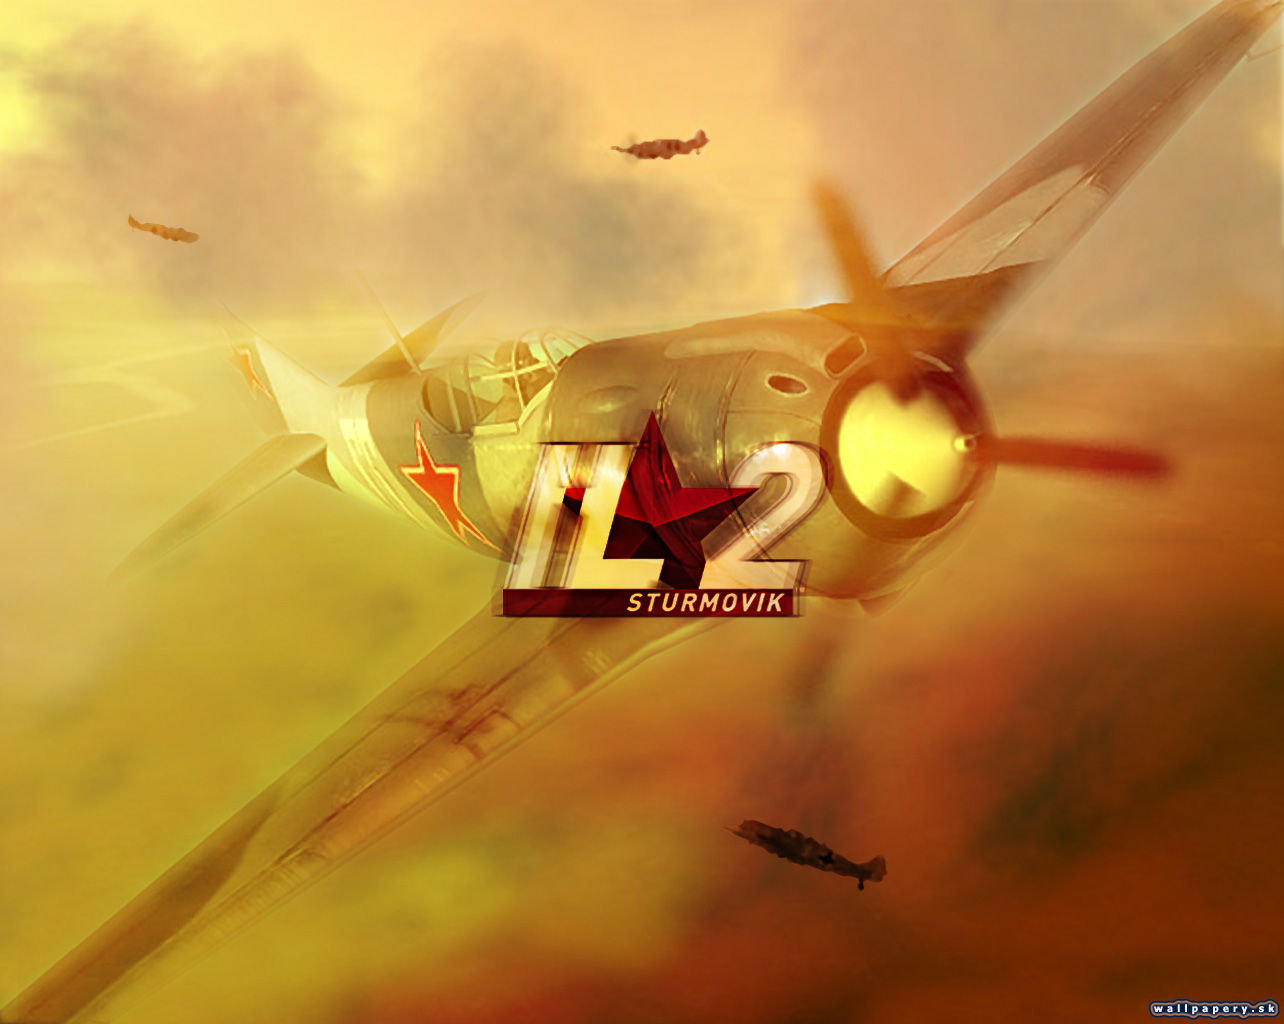 IL-2 Sturmovik - wallpaper 4